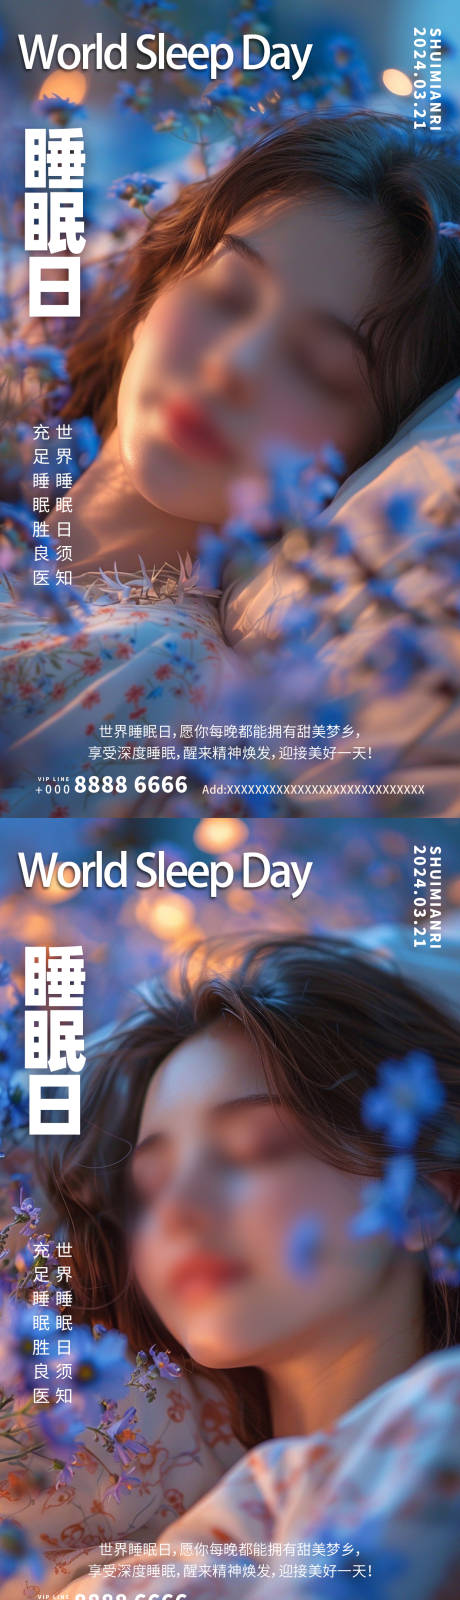 世界睡眠日系列海报